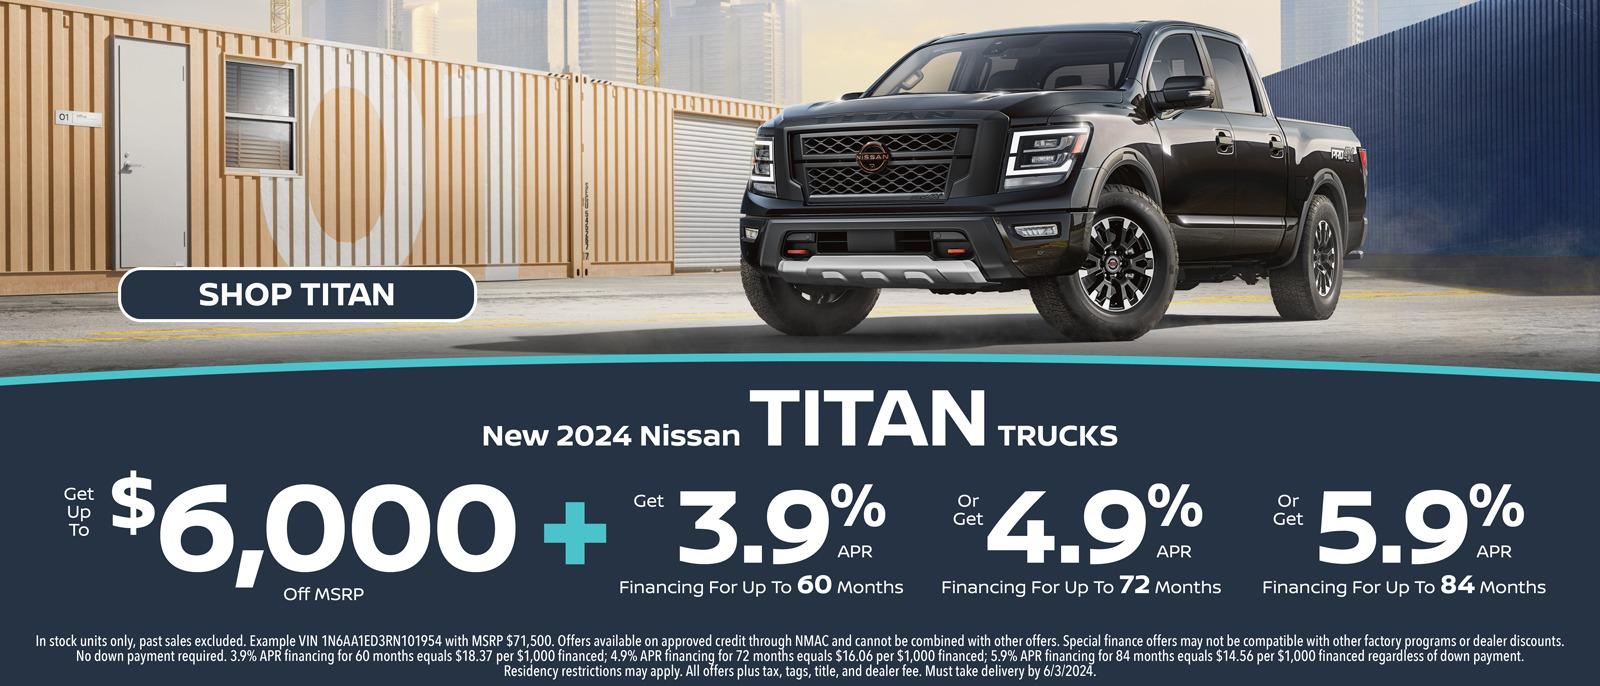 New 2024 Nissan Titan Trucks